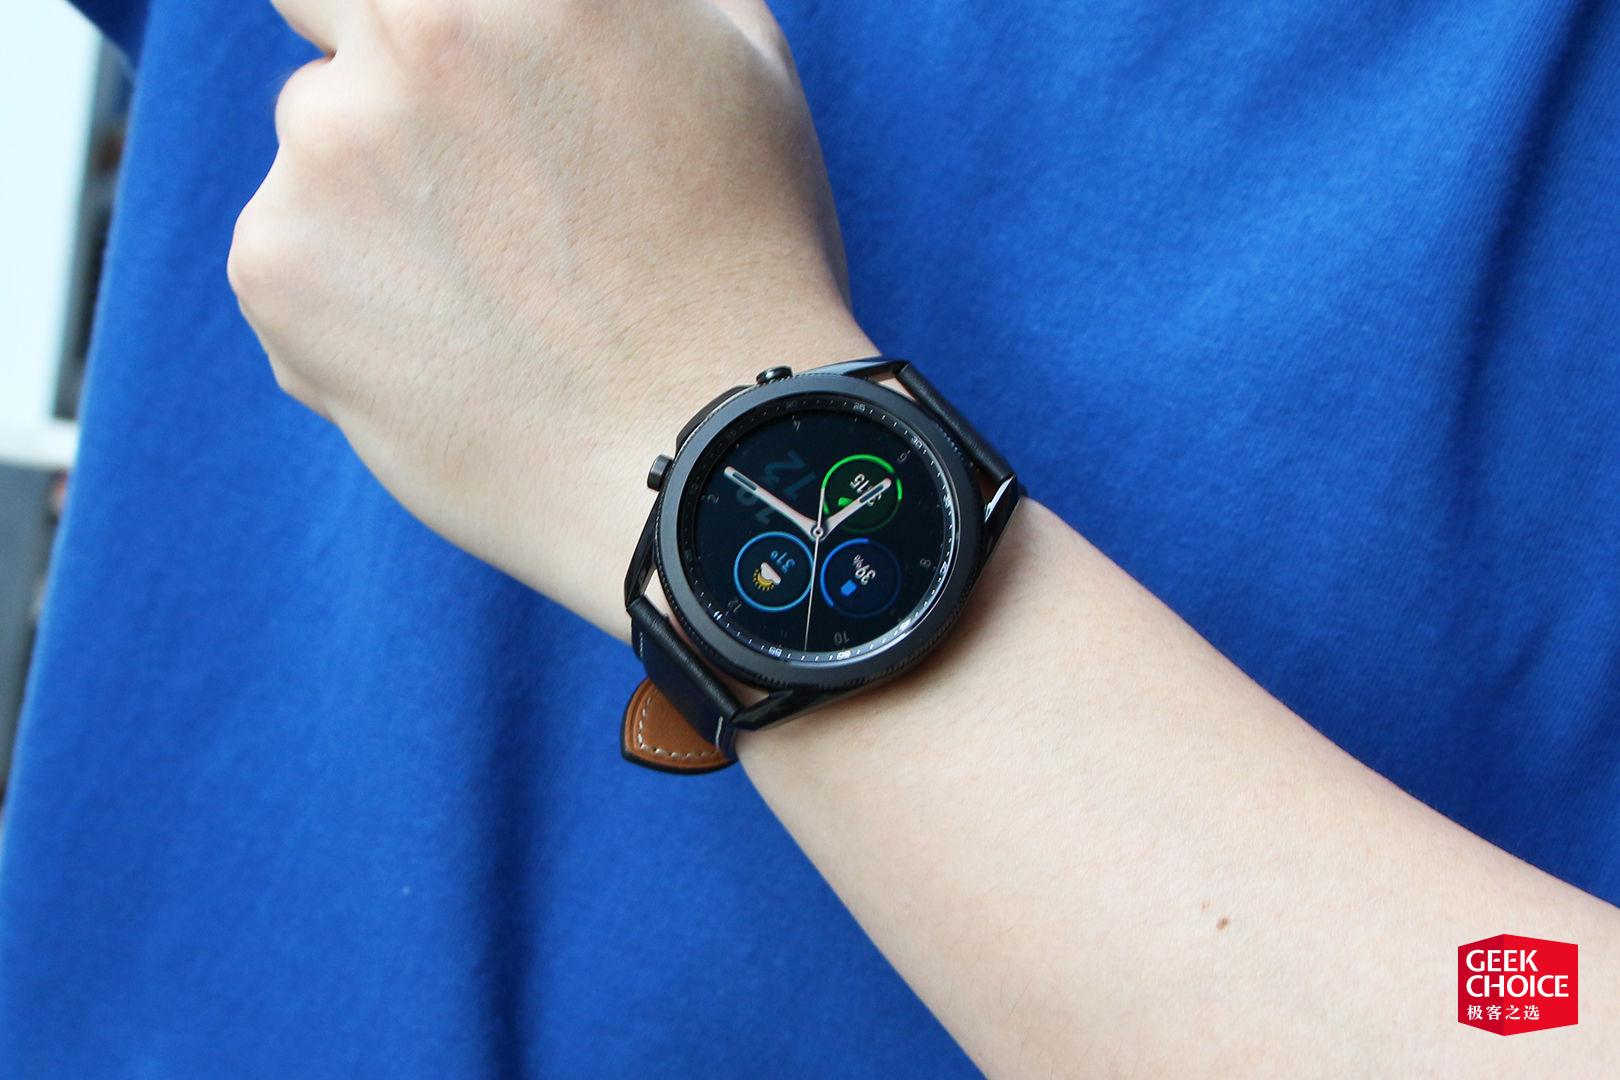 如何评价 2020 年 8 月 5 日发布的三星 galaxy watch 3 智能手表?